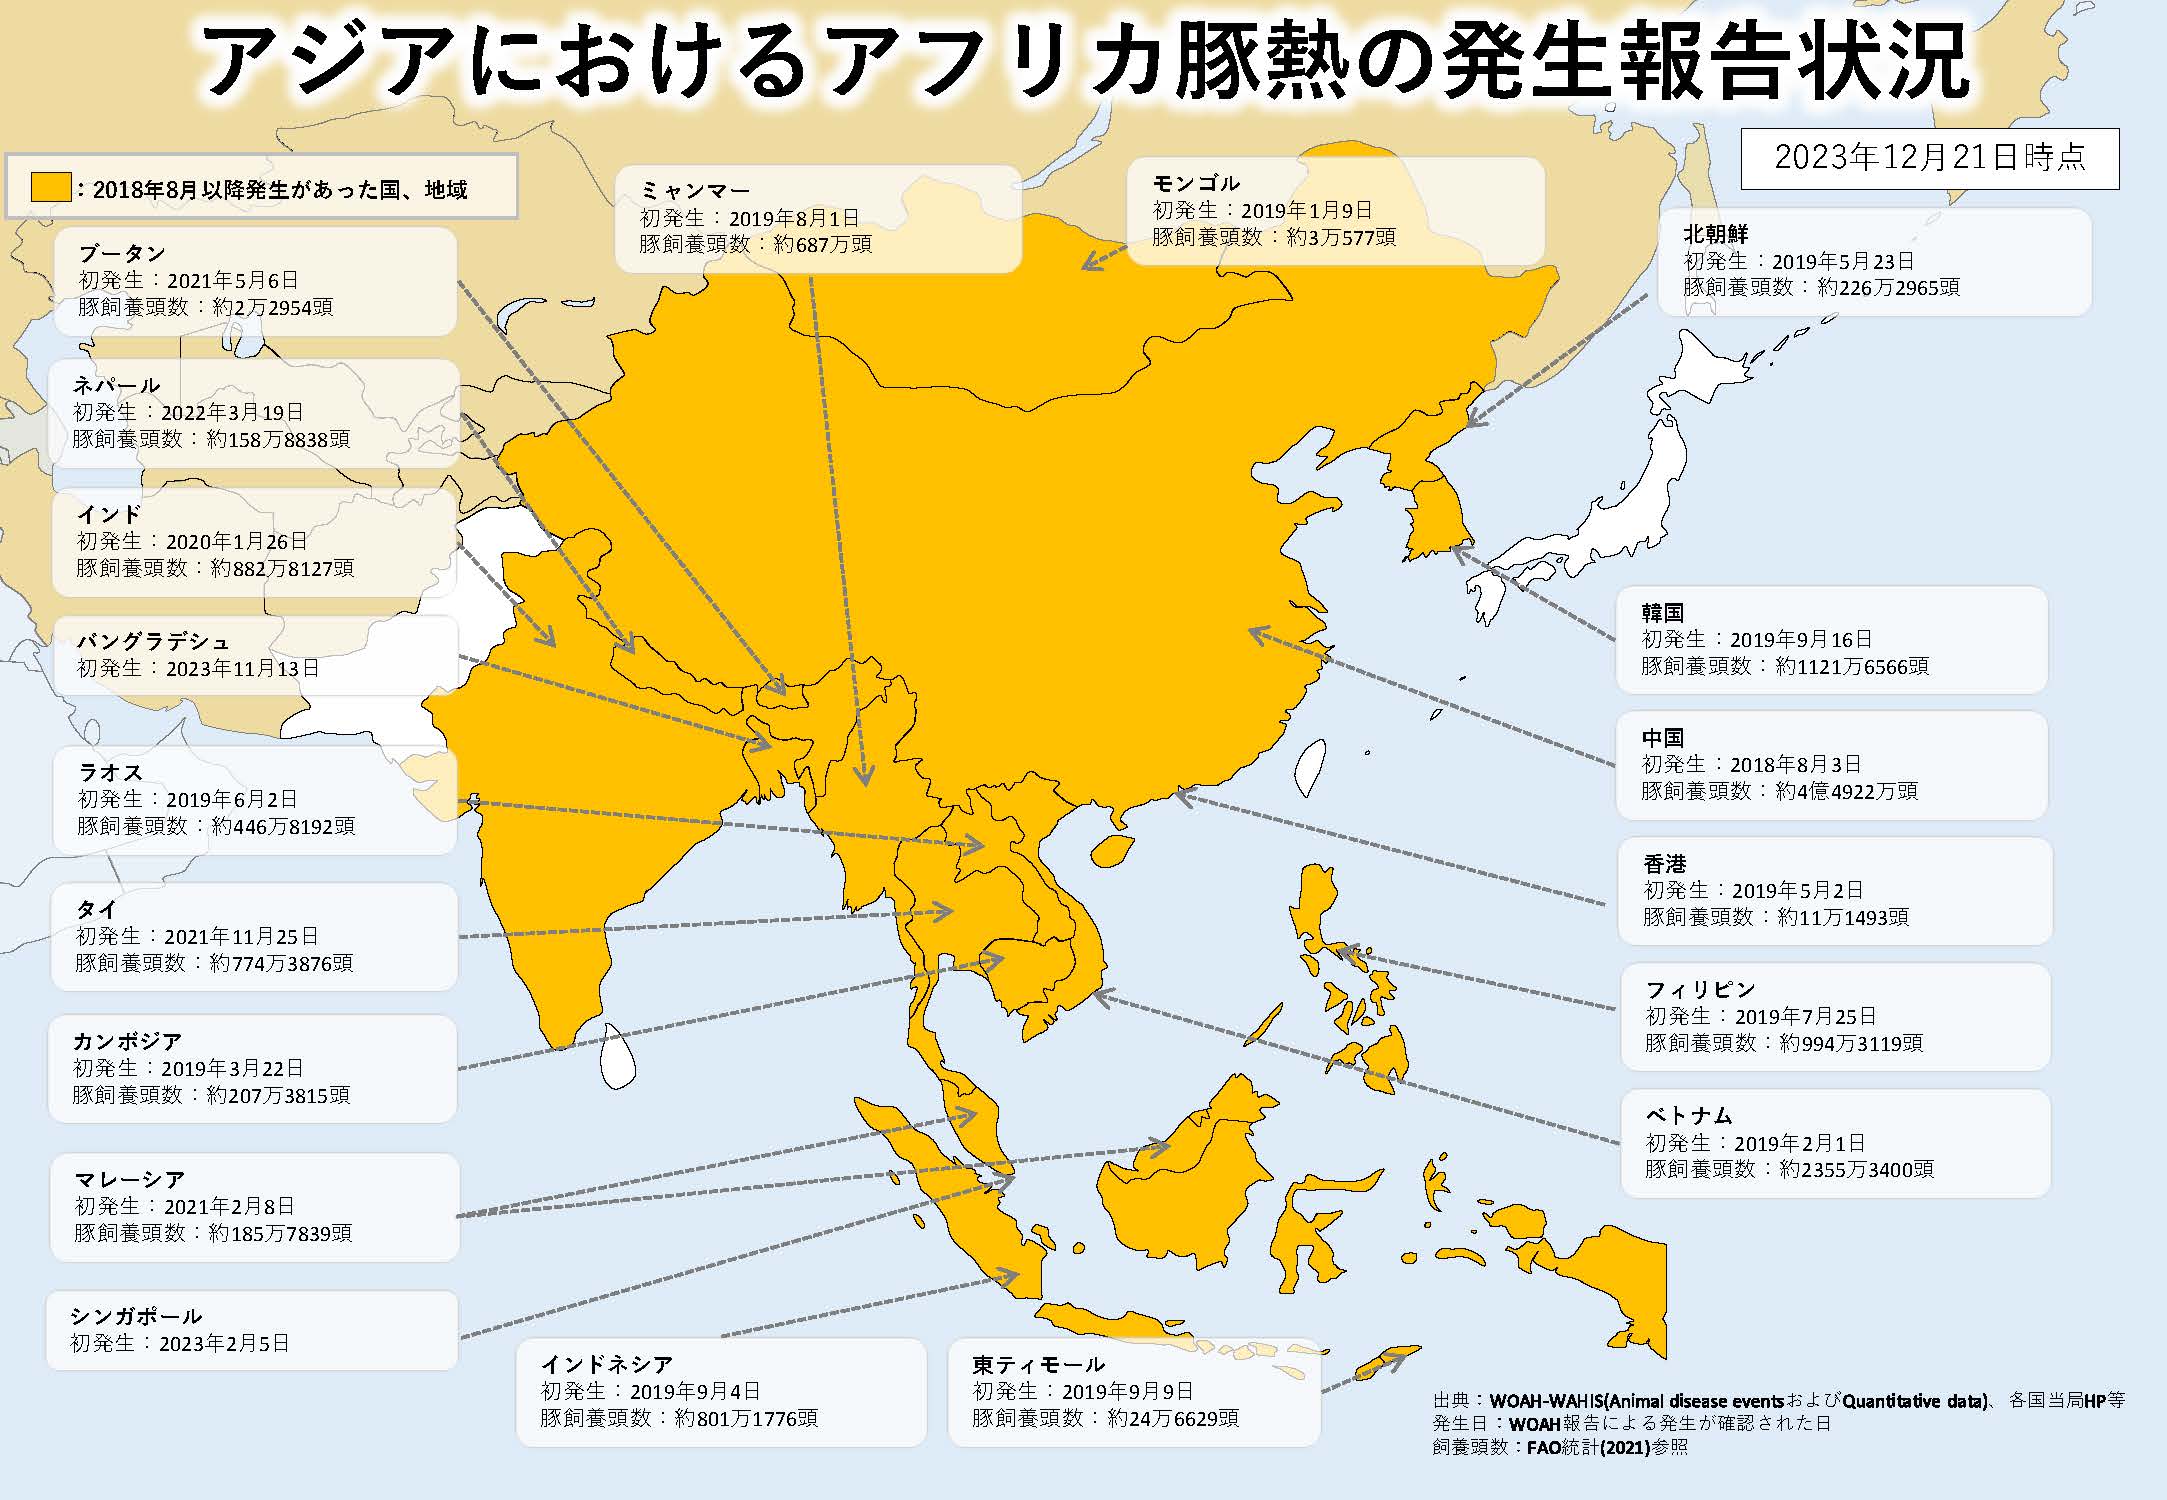 2023年12月21日現在のアジアにおけるASFの発生状況を示した地図のイラスト（提供は農林水産省）